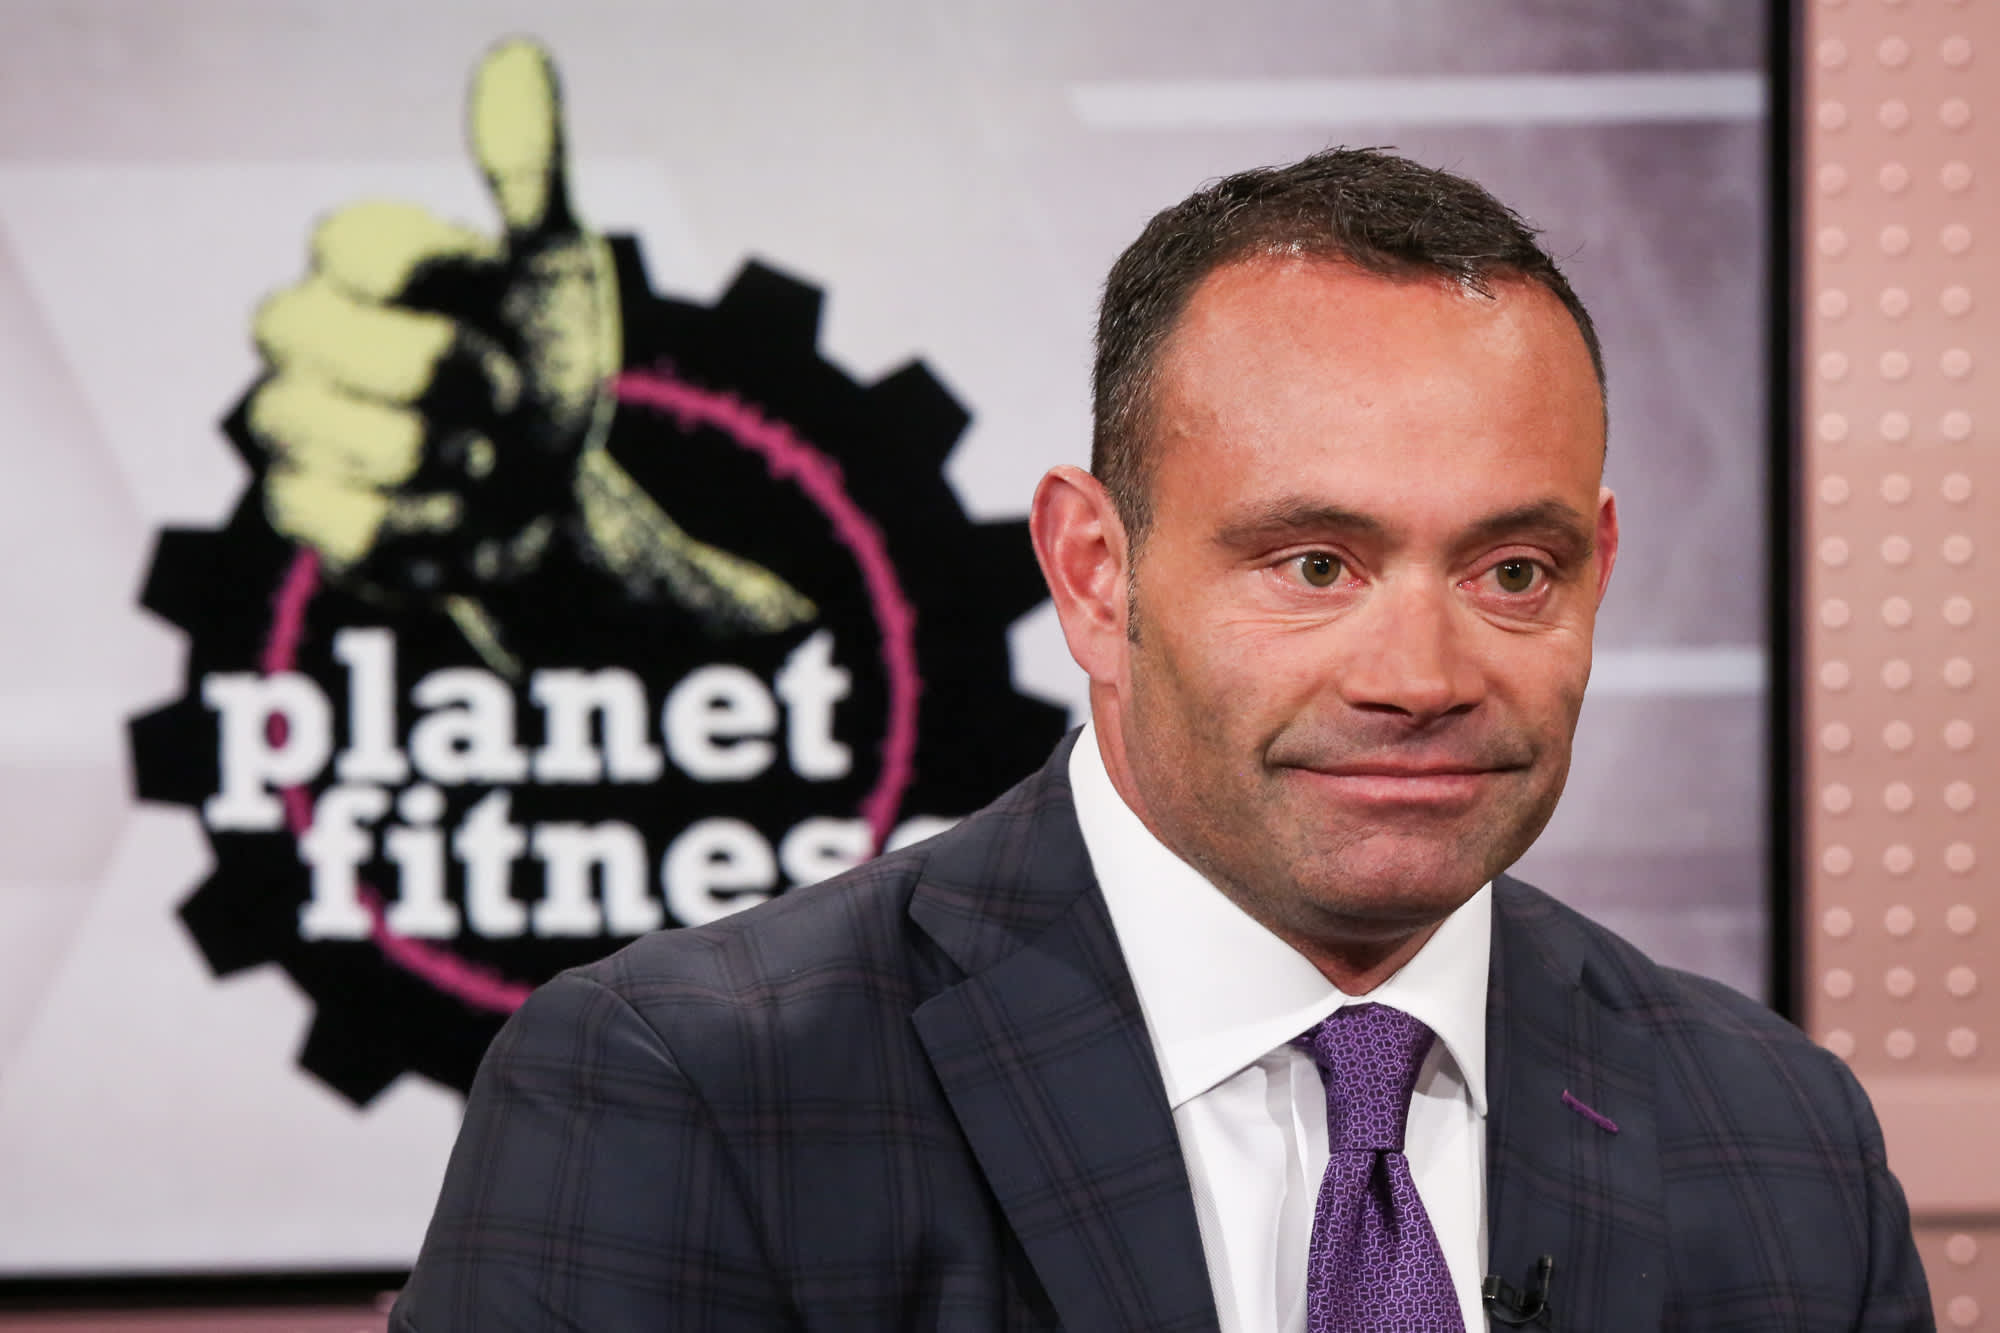 Le azioni di Planet Fitness diminuiscono dopo che il consiglio di amministrazione licenzia il CEO